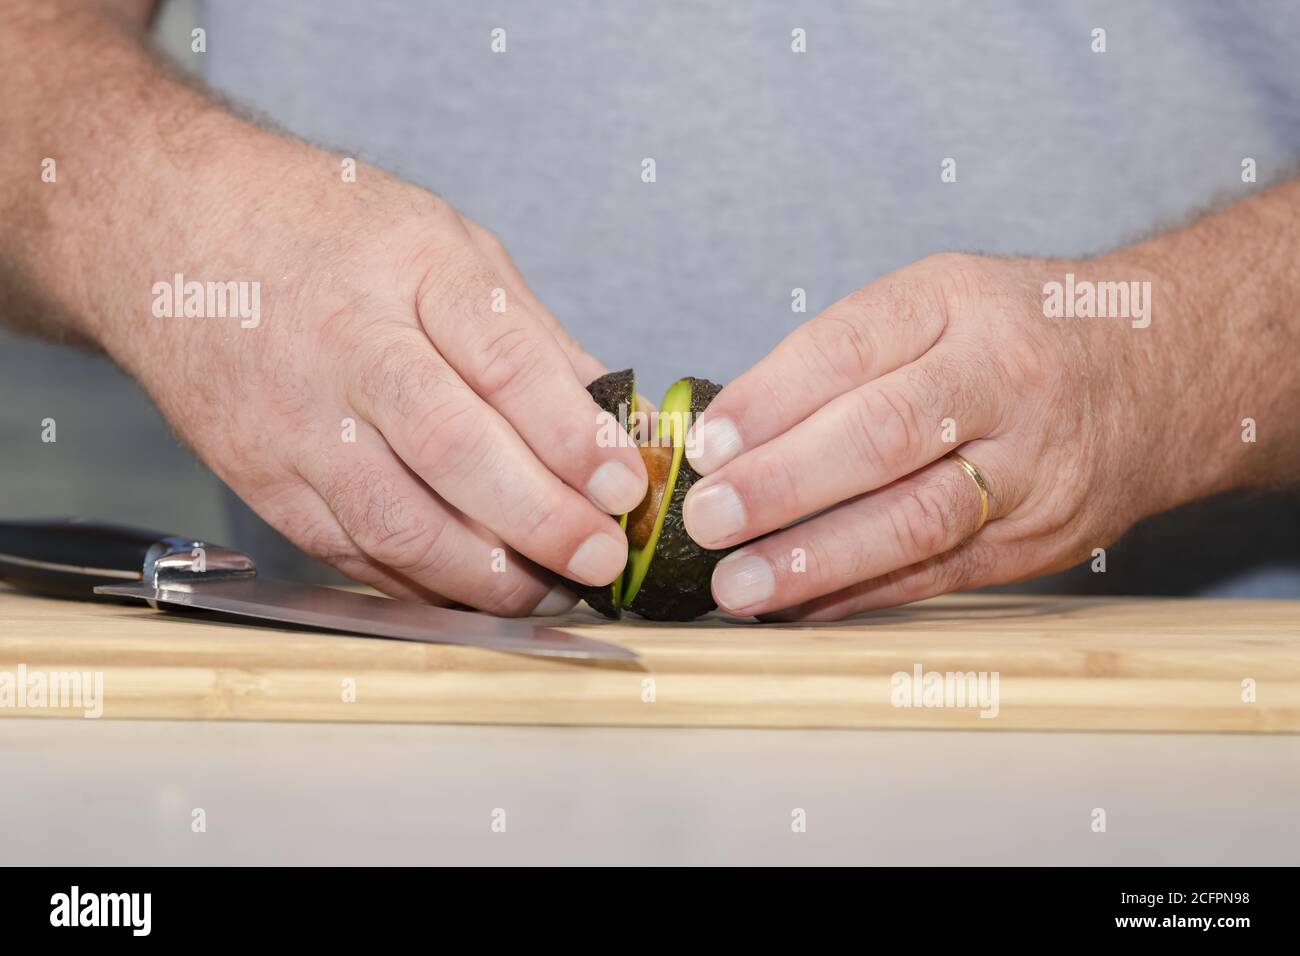 Primo piano delle mani maschili che separano le due metà di un avocado appena tagliato su un tagliere di legno Foto Stock